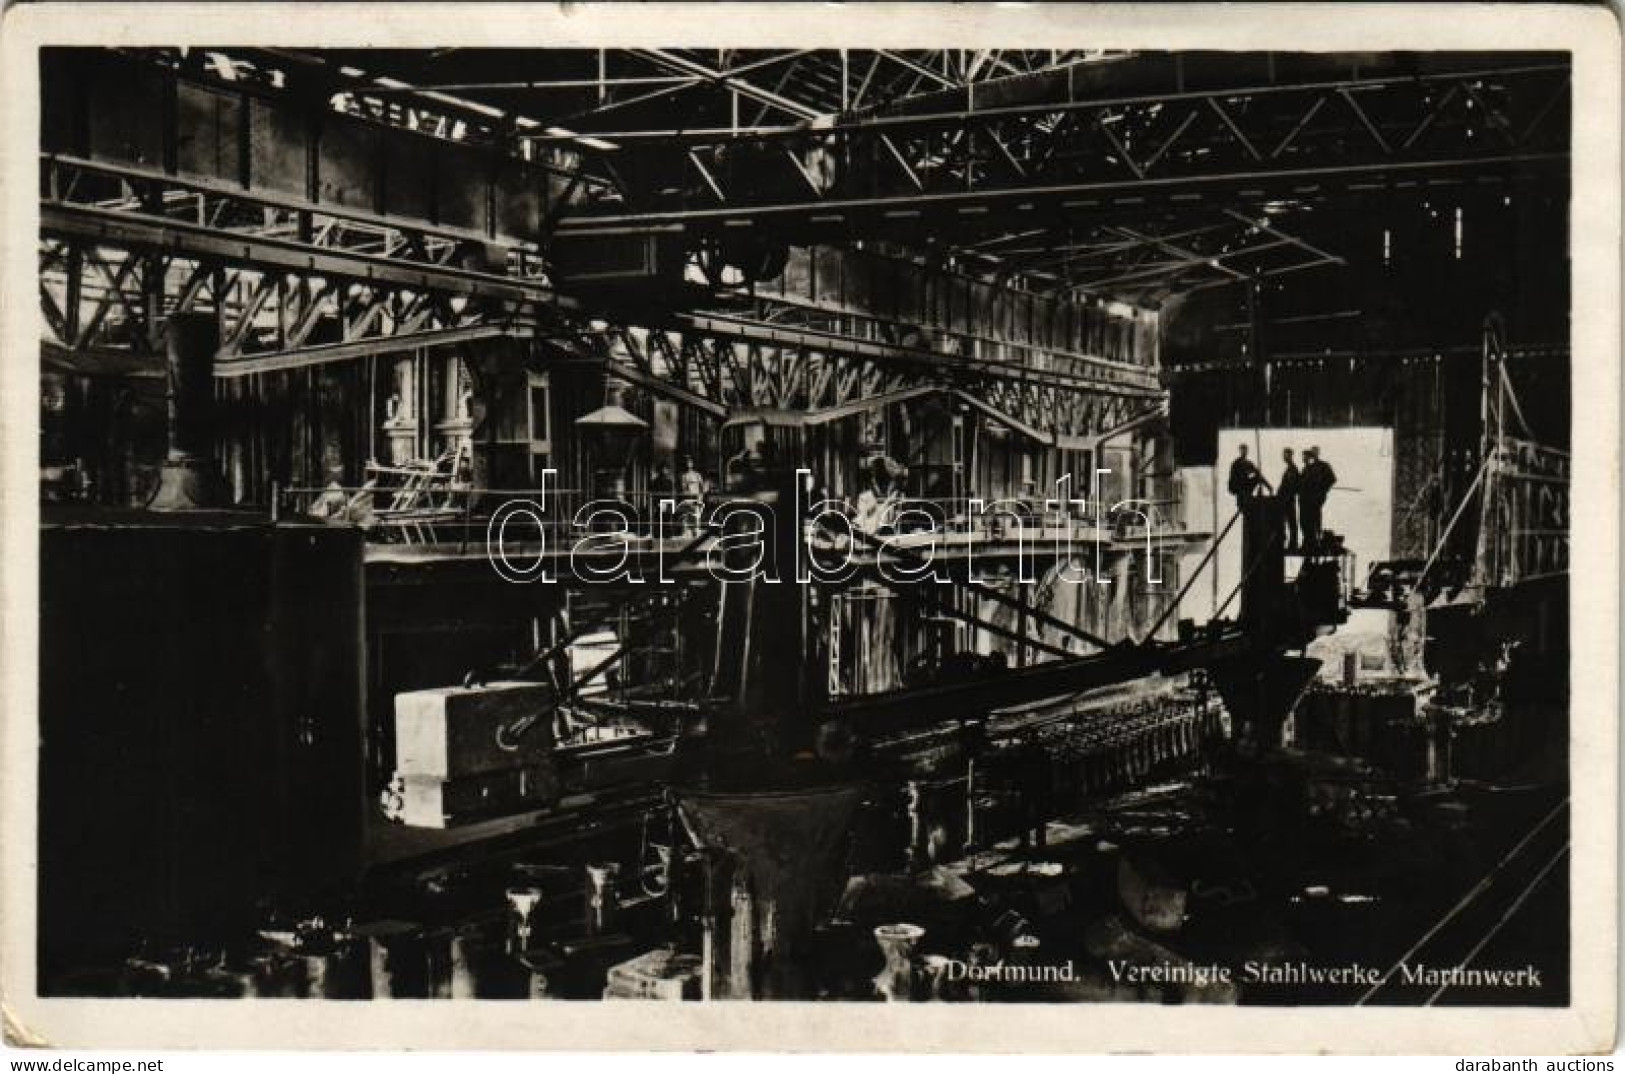 * T3 1931 Dortmund, Vereinigte Stahlwerke, Martinwerk / Steel Works, Factory, Interior With Workers And Machines. Herman - Unclassified